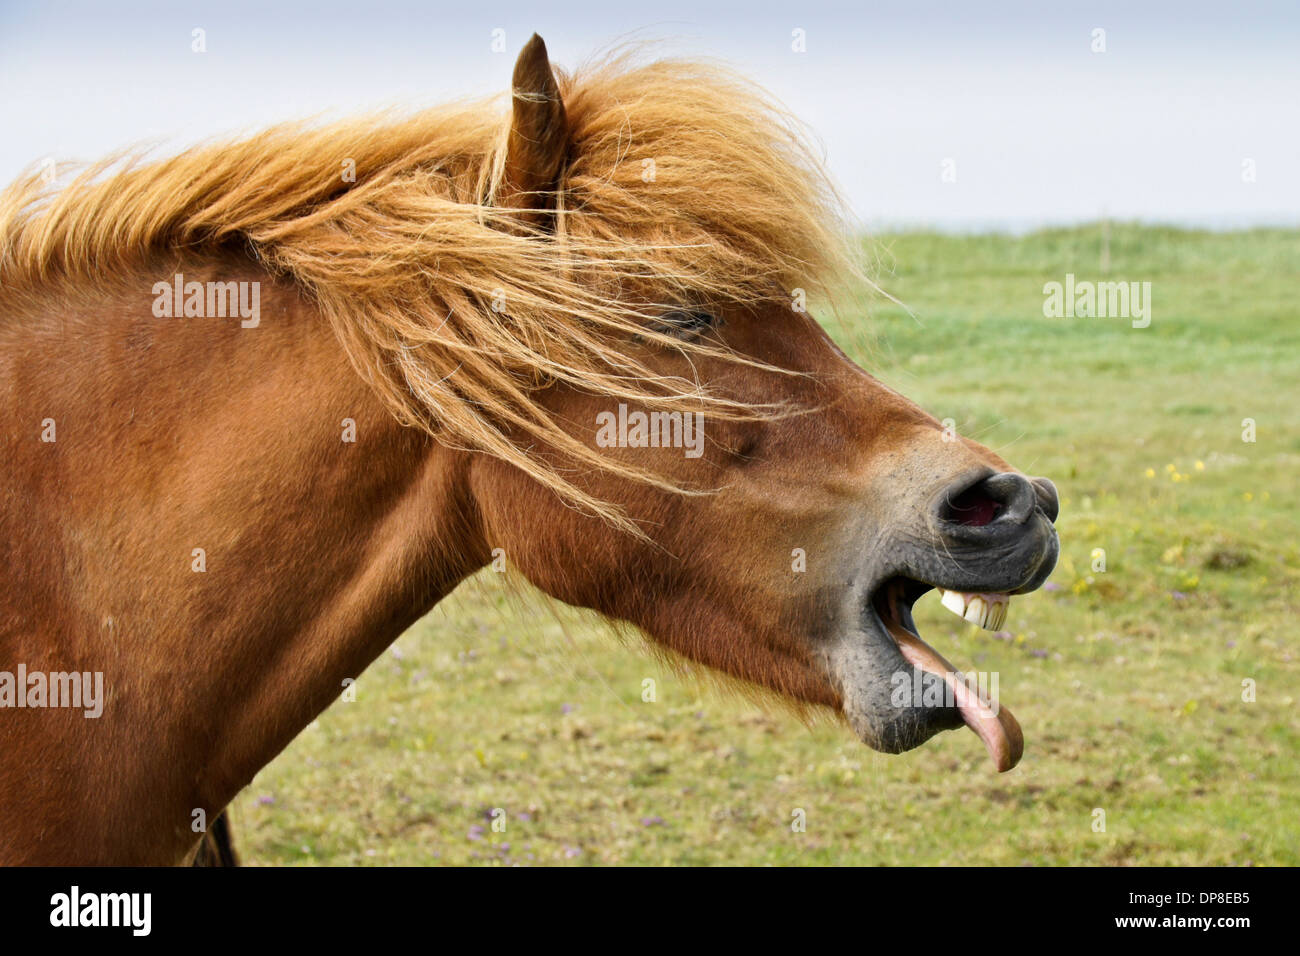 Iceland horse yawning (or laughing), Iceland Stock Photo